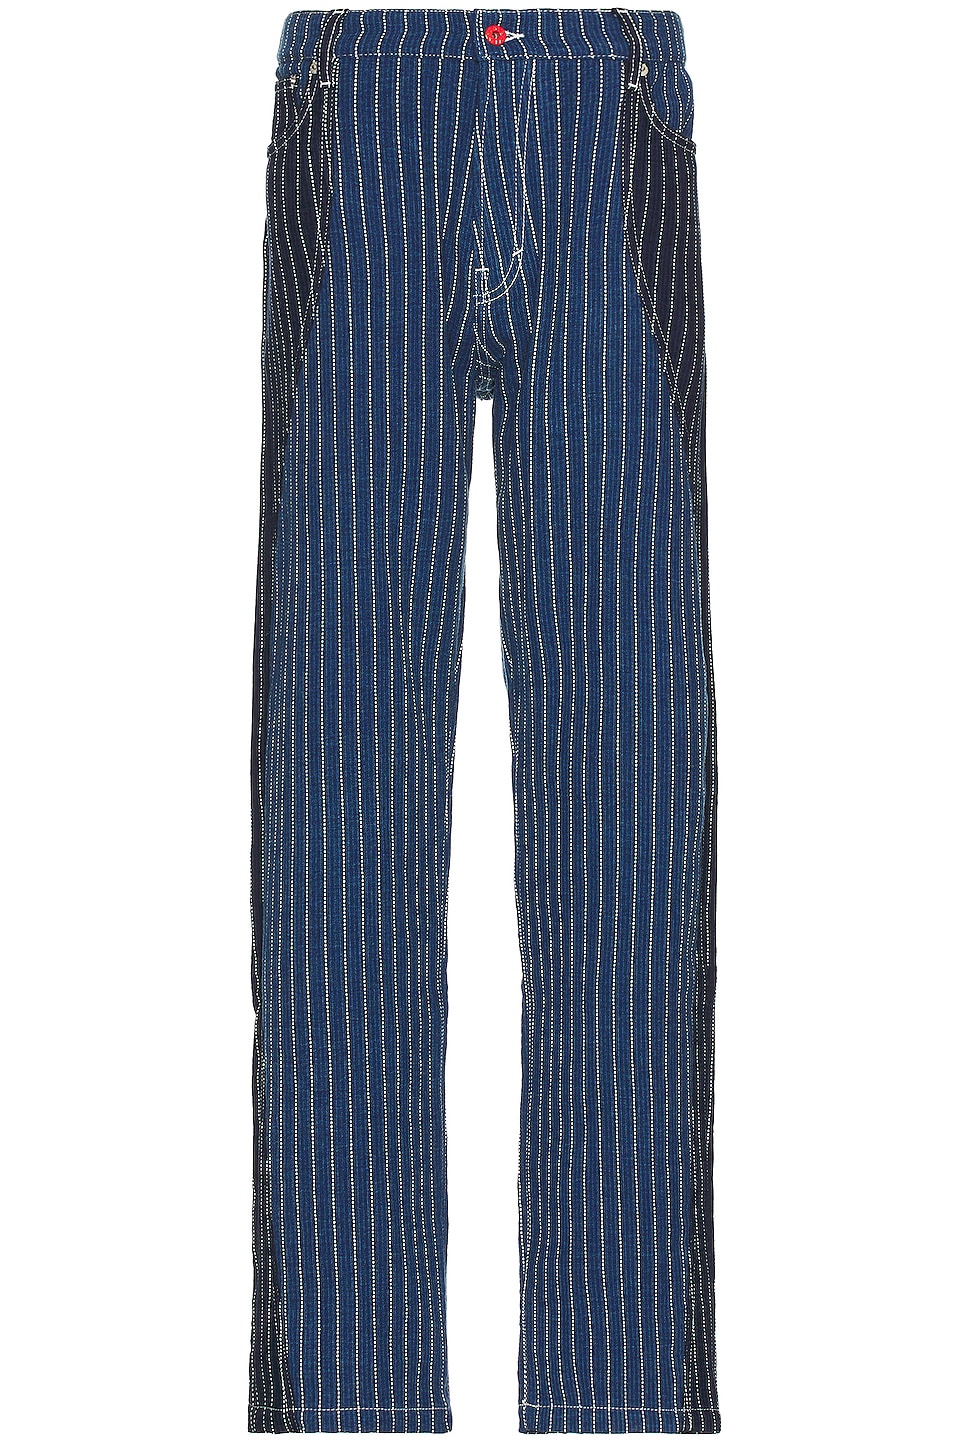 Image 1 of Kenzo Medium Stone Patchwork Loose Denim Jean in Medium Stone Blue Denim